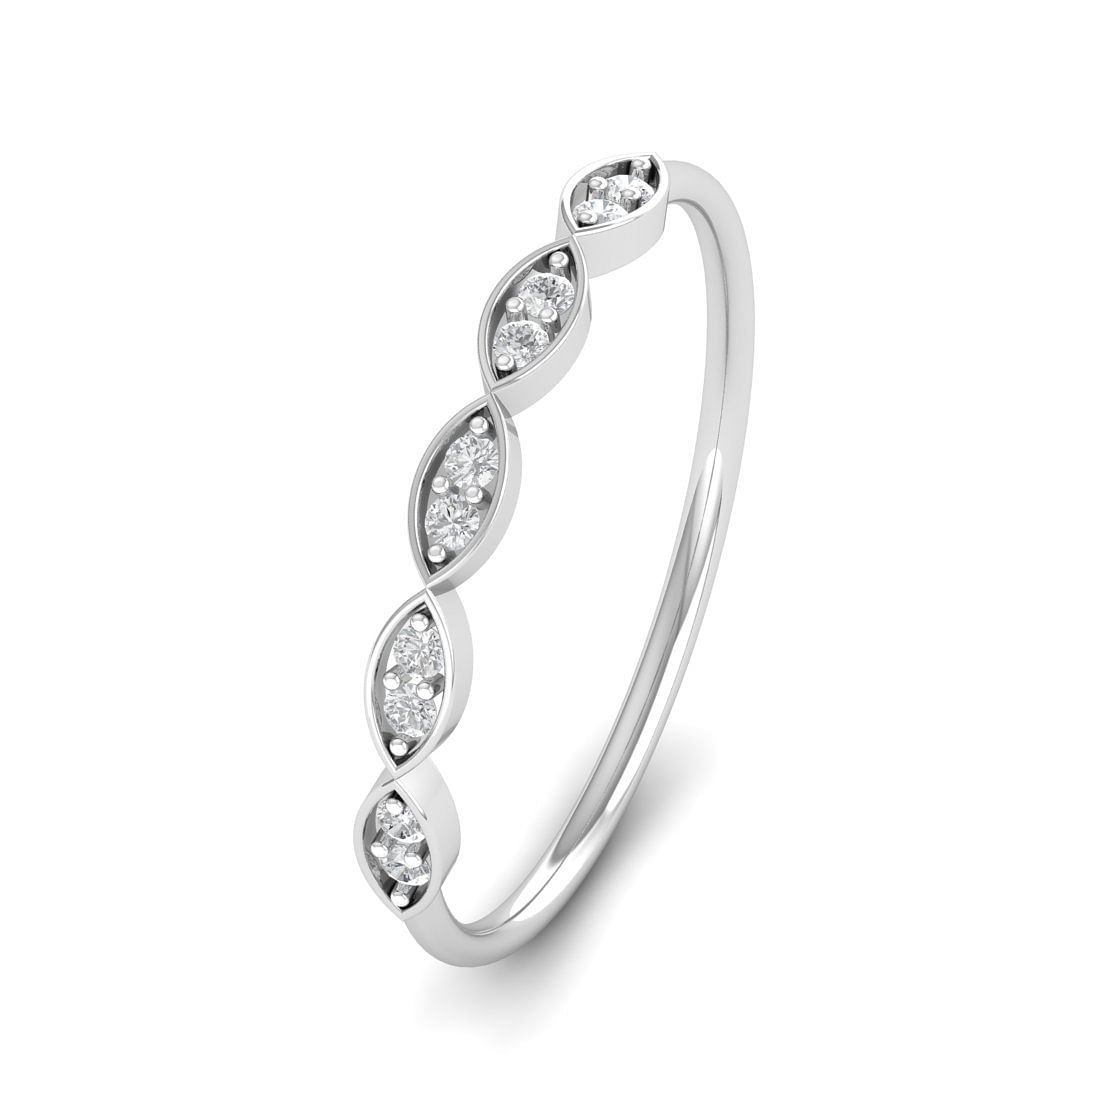 Taissa White Gold Diamond Ring For Women